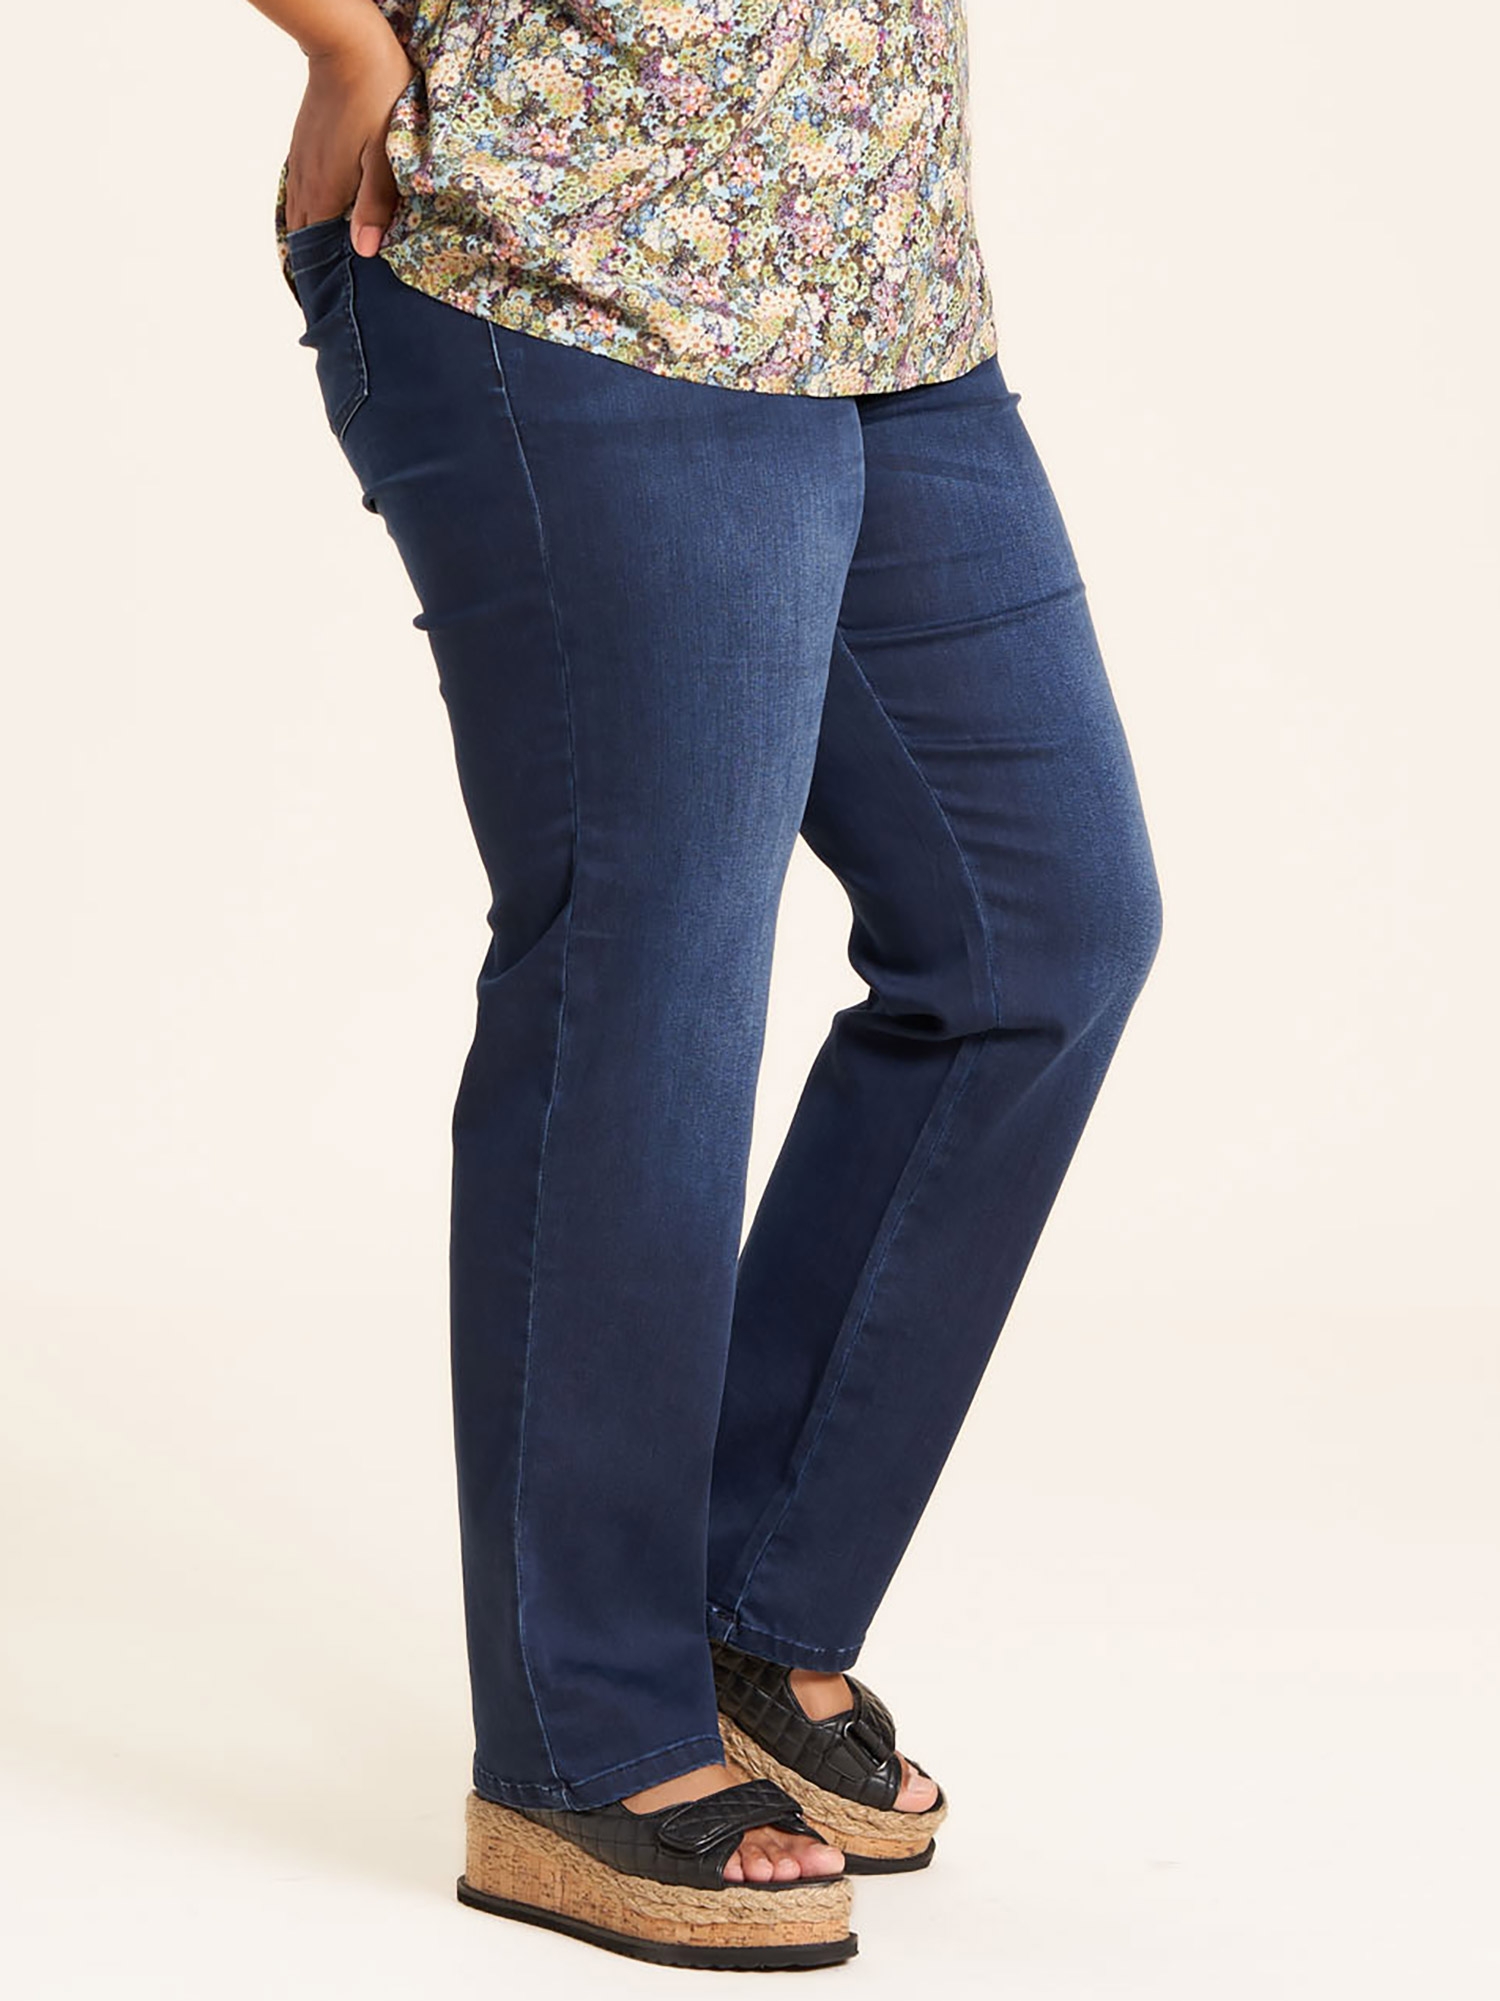 Carmen - Mørkeblå jeans med rund pasform, lige ben og lang benlængde fra Studio